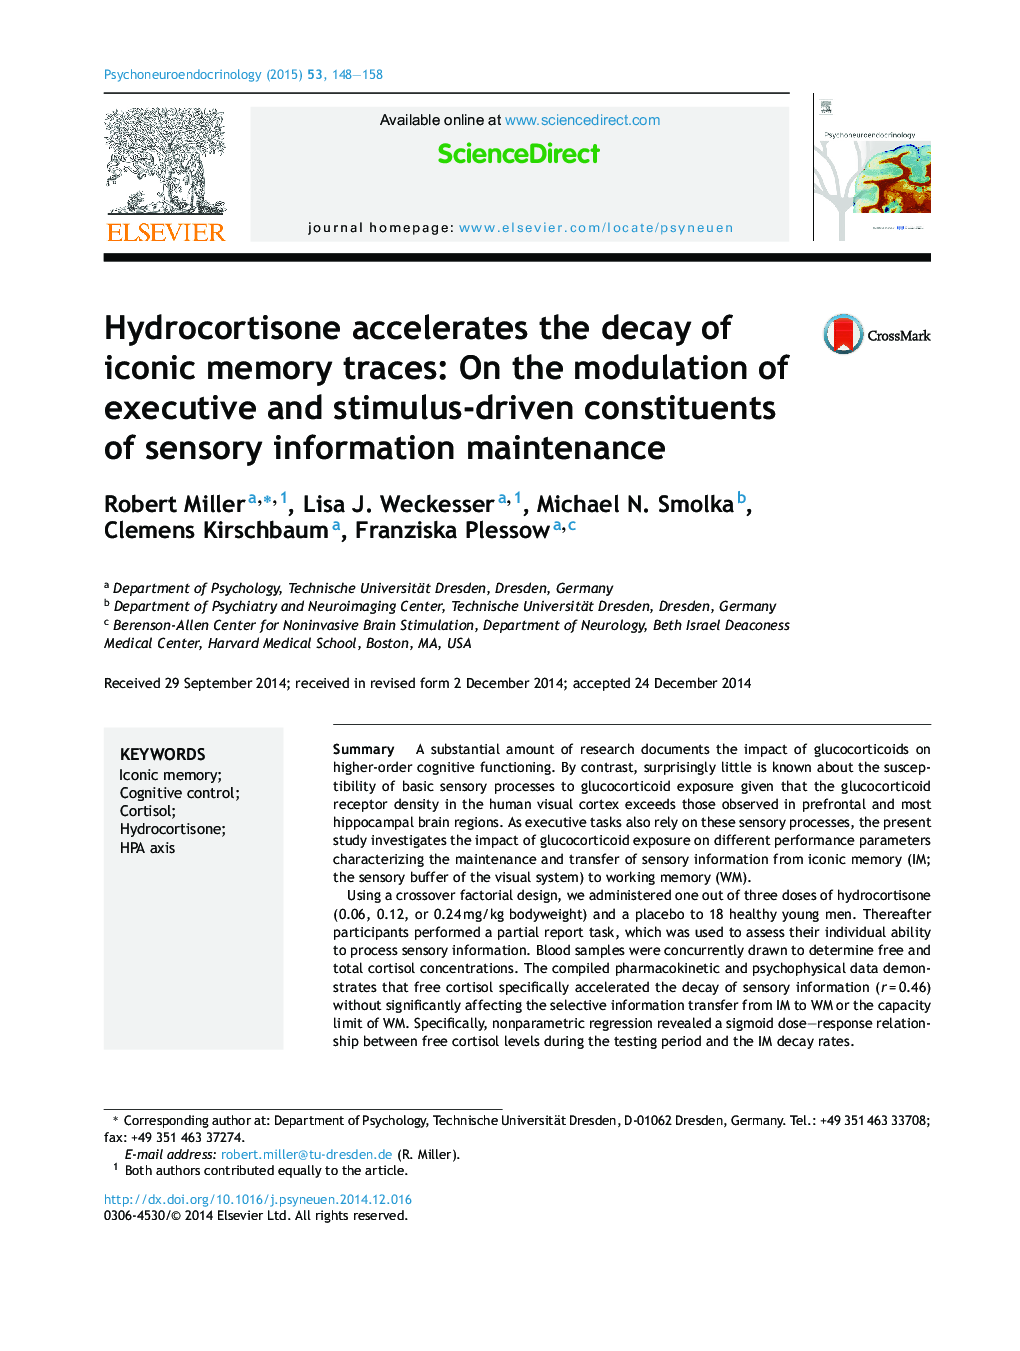 هیدروکورتیزون موجب تسریع در ریزش حافظه های یاد شده می شود: در تعدیل اجزای اجرایی و محرک های محرک نگهداری اطلاعات حسی 